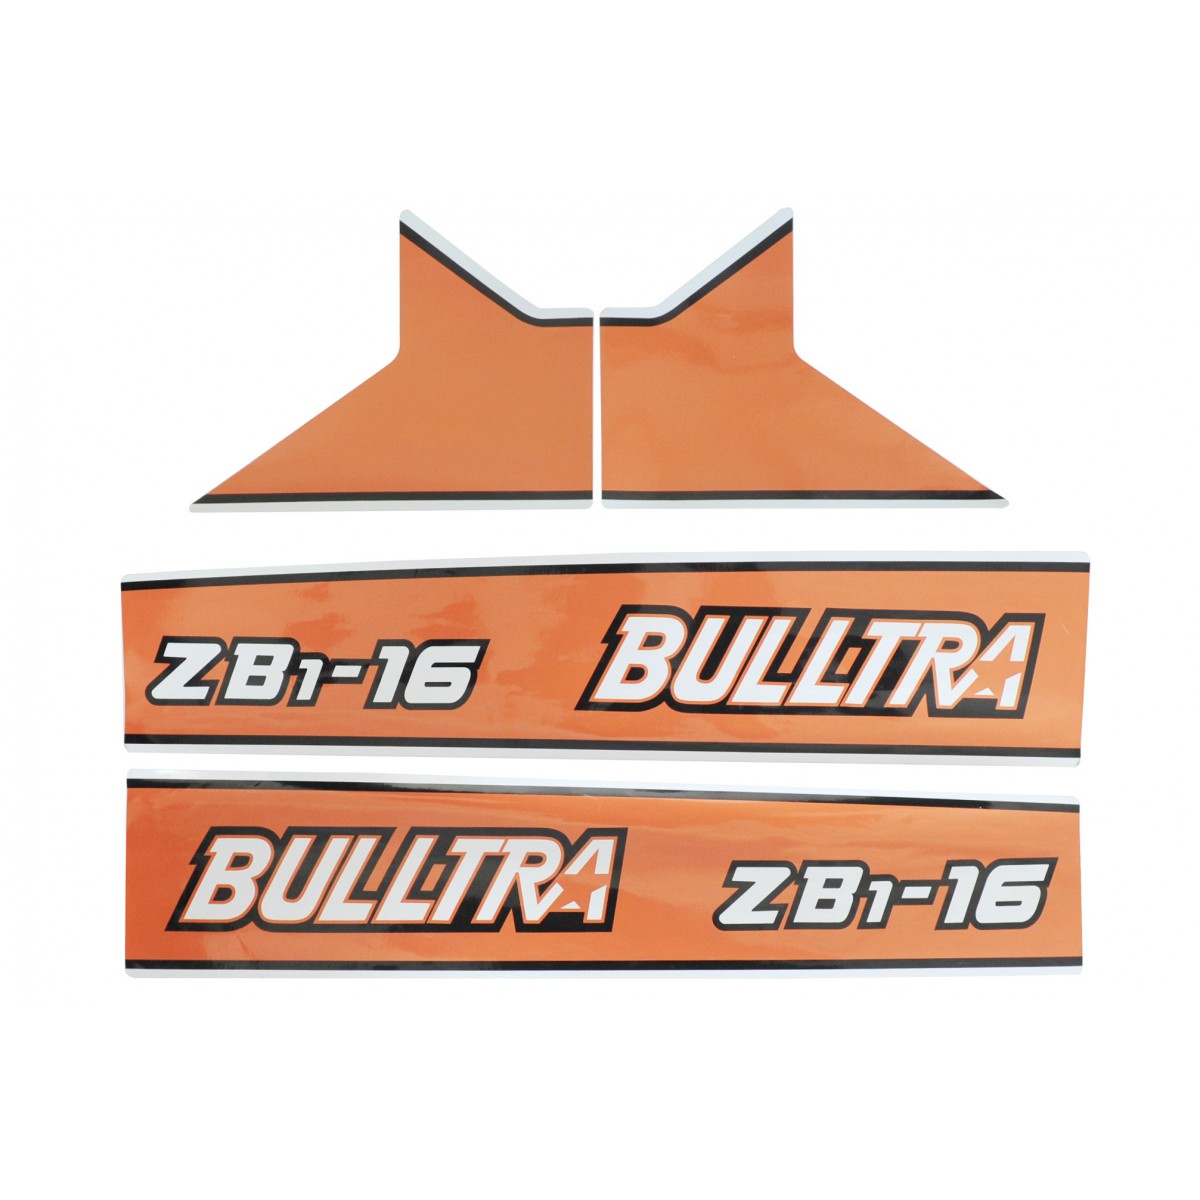 Kubota Bulltra B1-16, ZB1-16 stickers